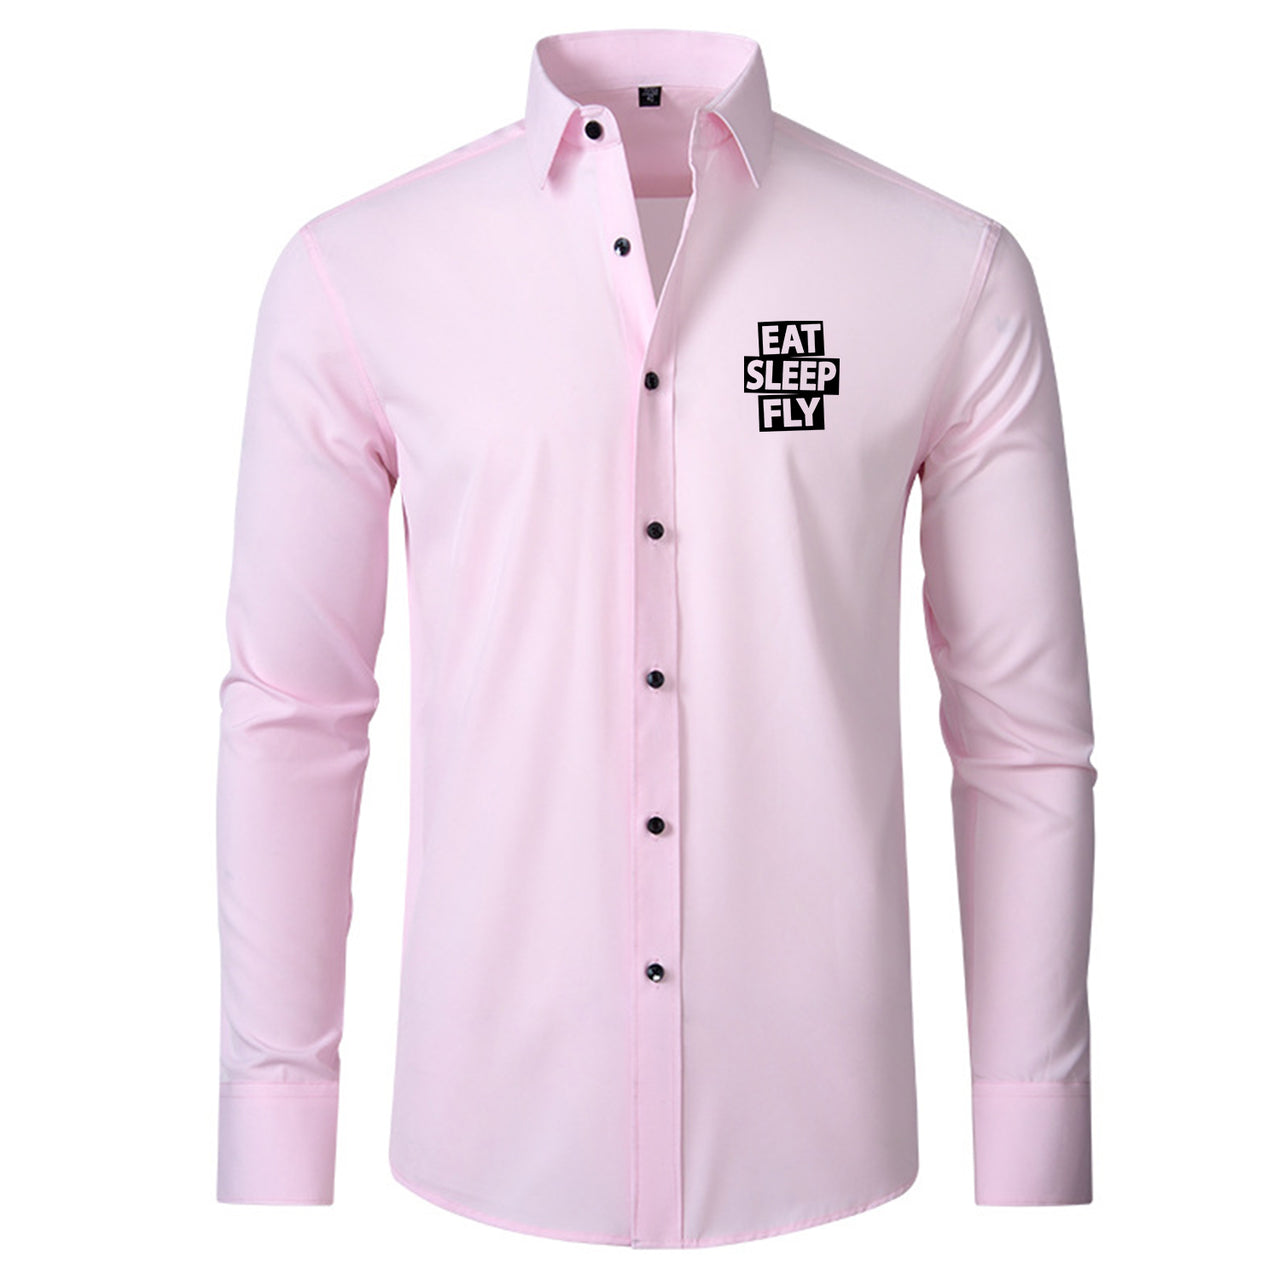 Eat Sleep Fly Designed Long Sleeve Shirts